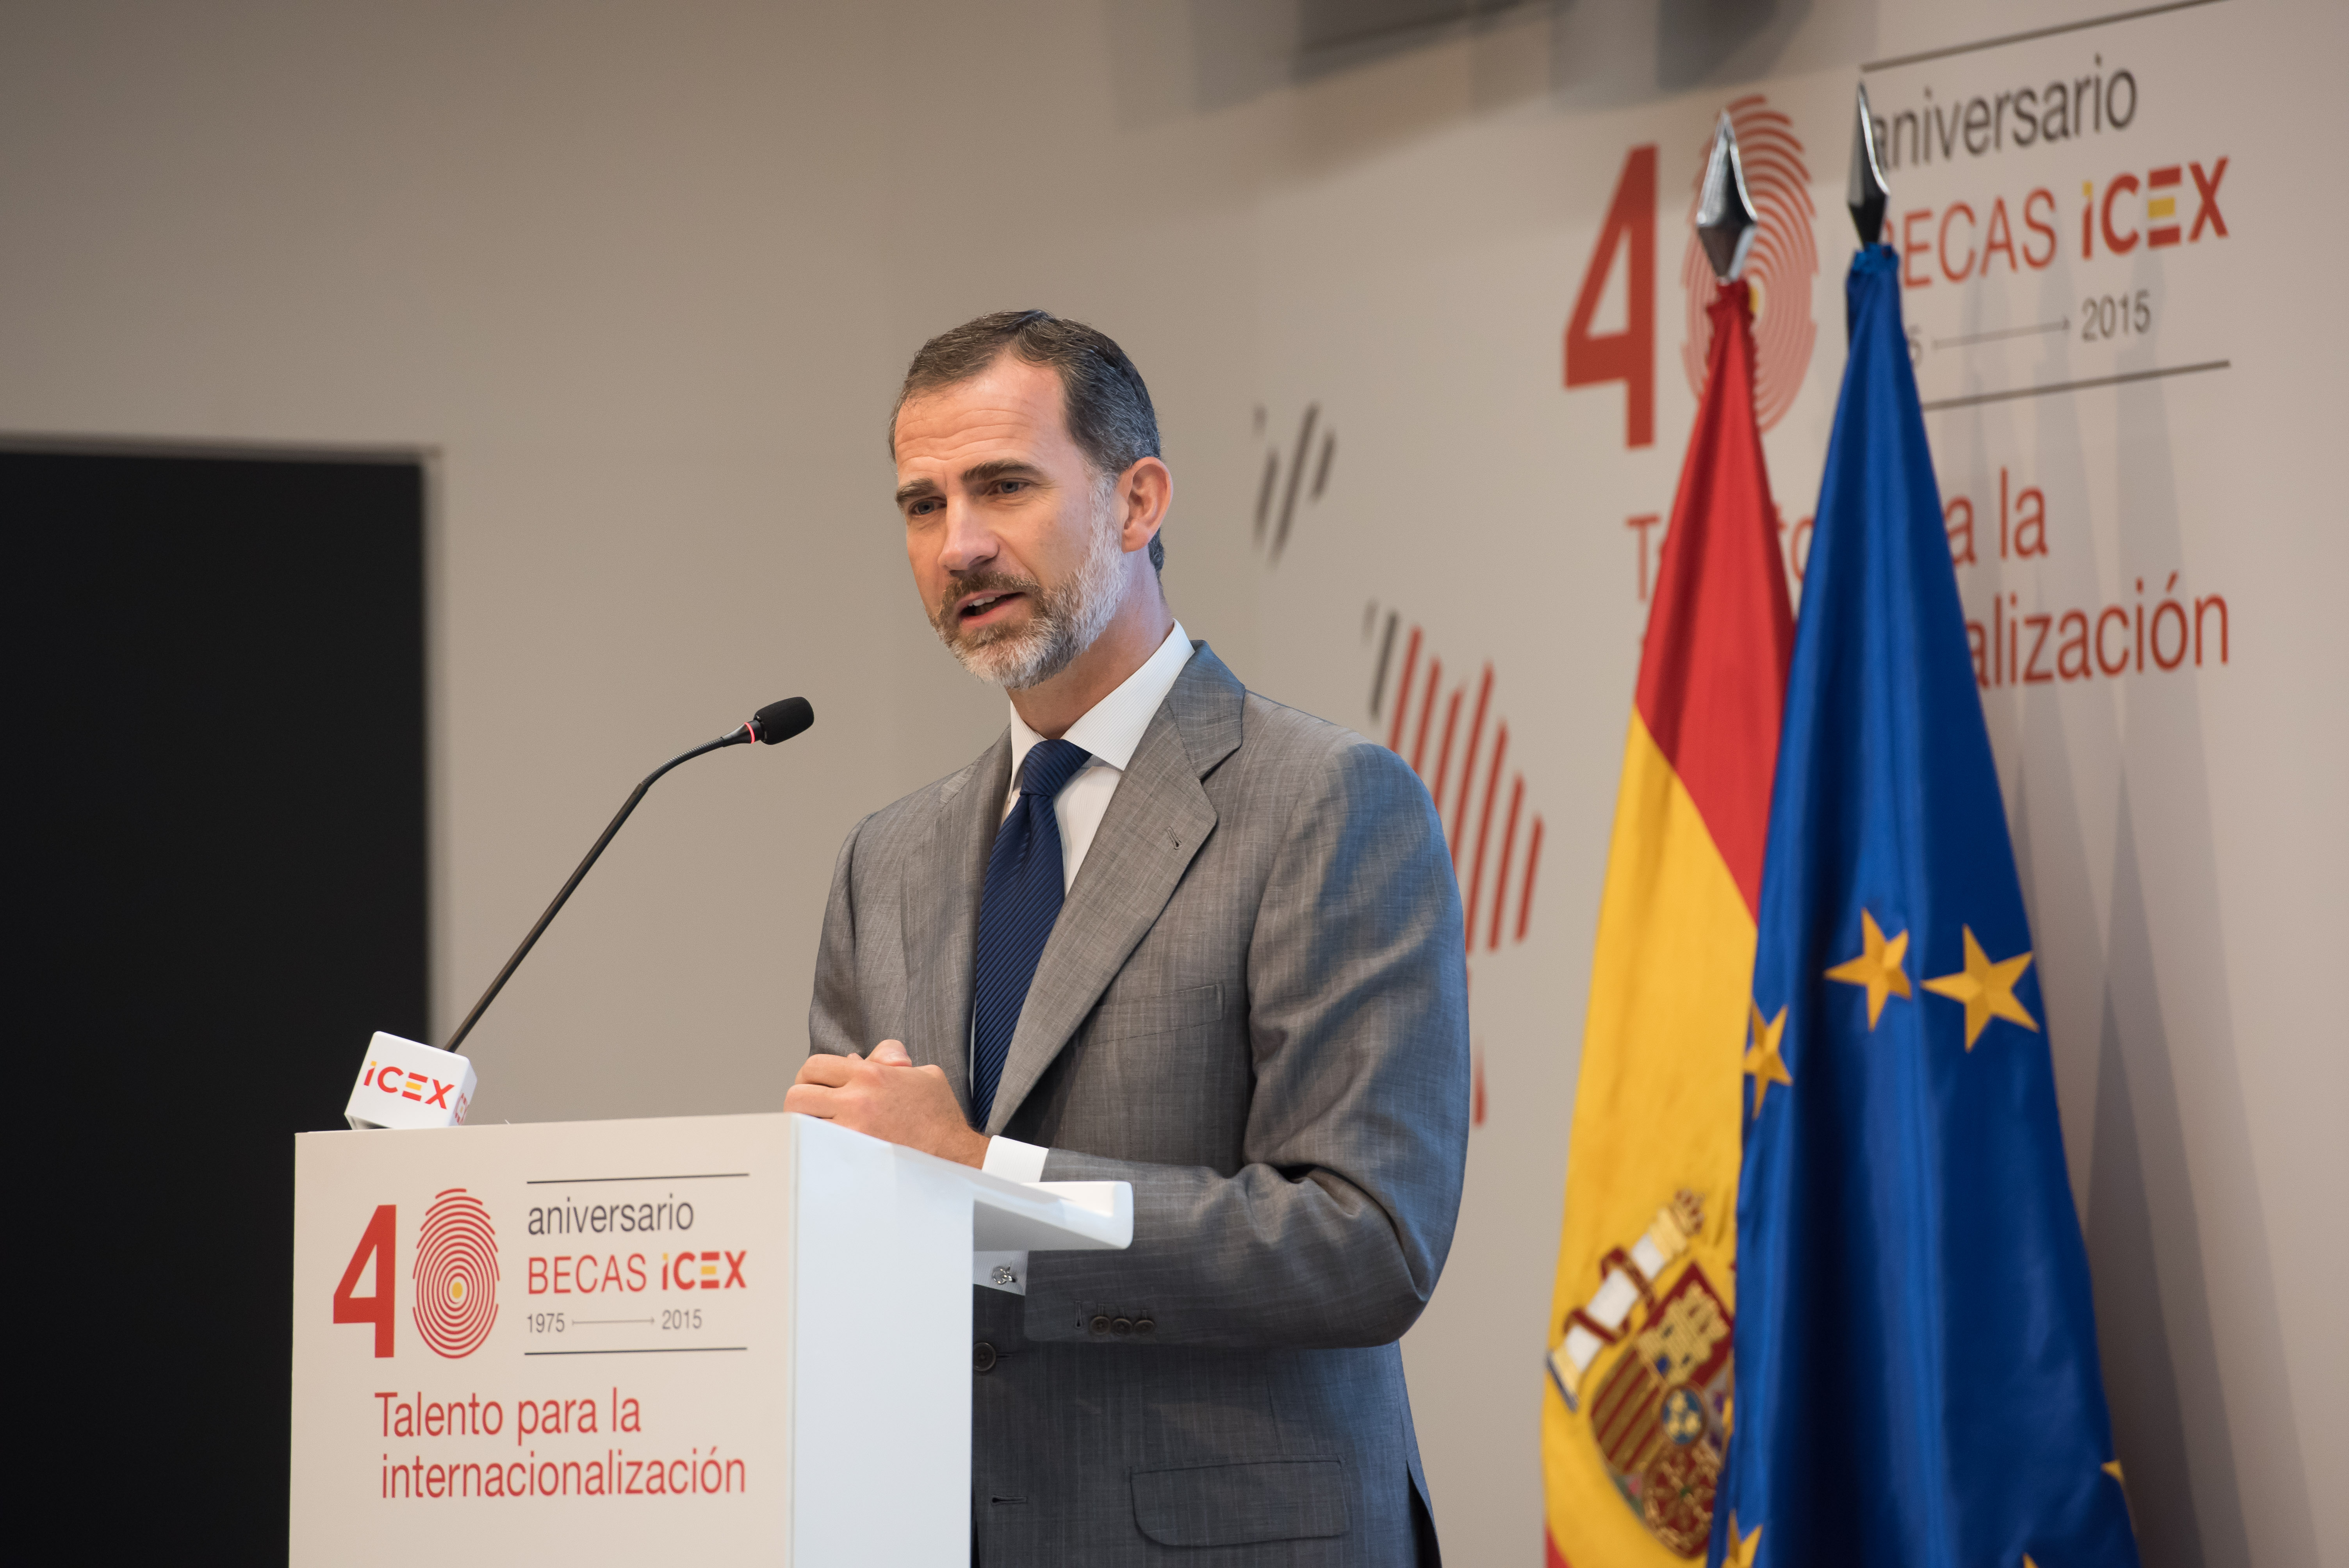 Rey Felipe VI hablando en el 40 aniversario becas ICEX